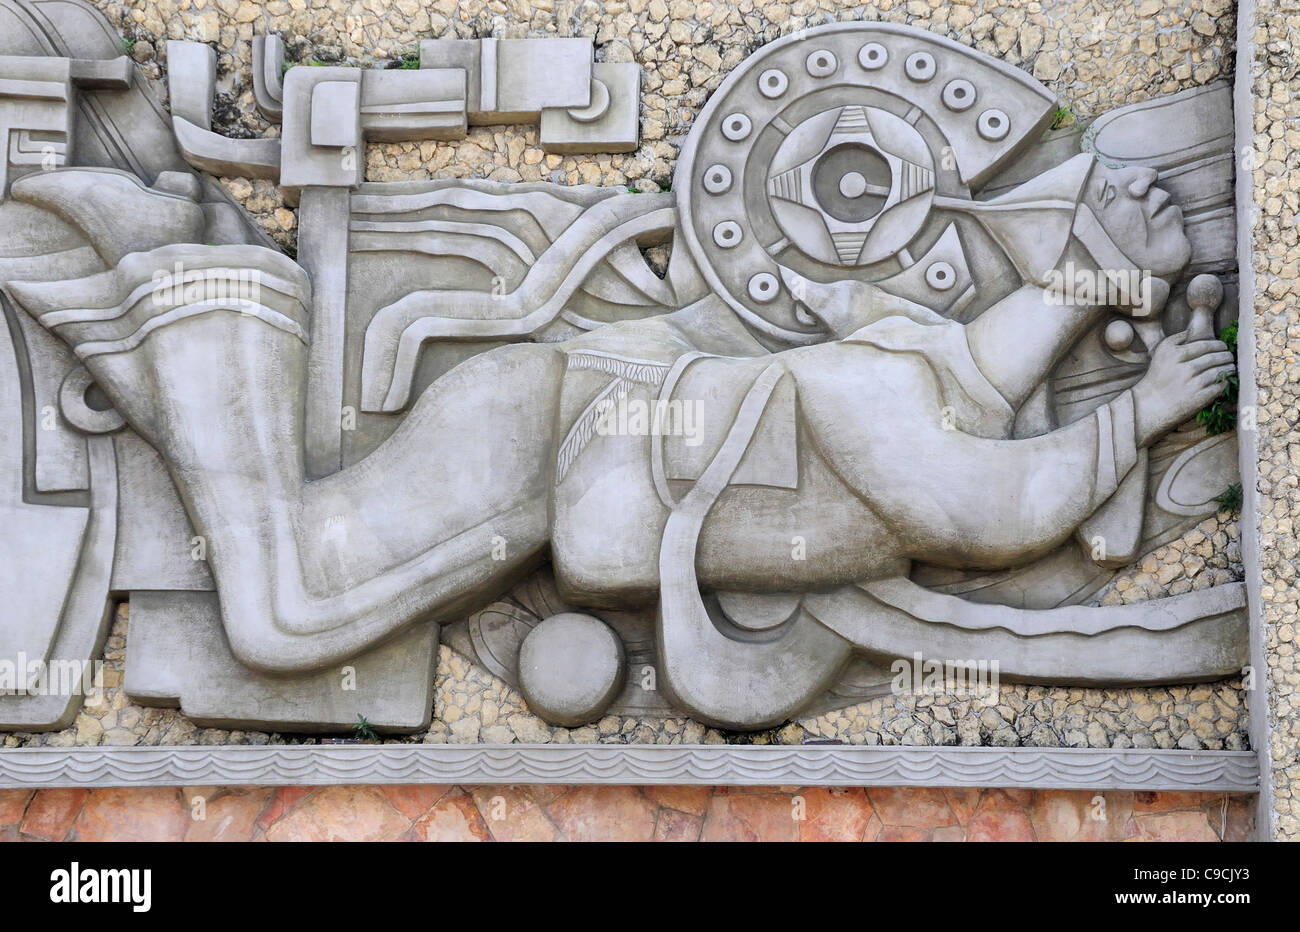 Mexico, Veracruz, Papantla, Detail of mural depicting Voladores de Papantla in the Zocalo. Stock Photo